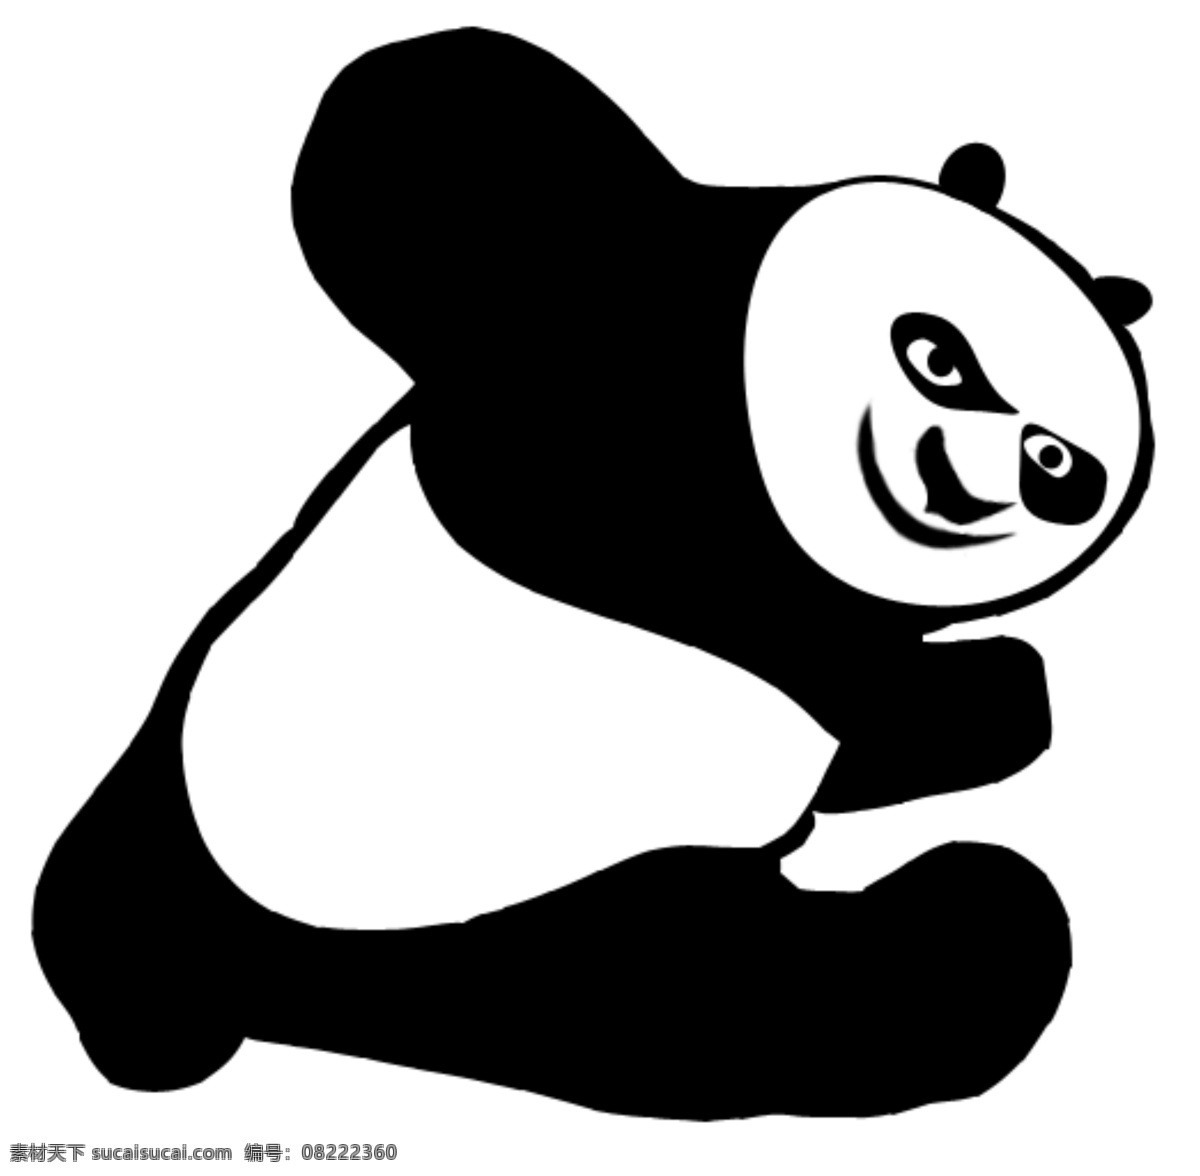 功夫 熊猫 简 笔画 功夫熊猫 简笔画 卡通图 psd源文件